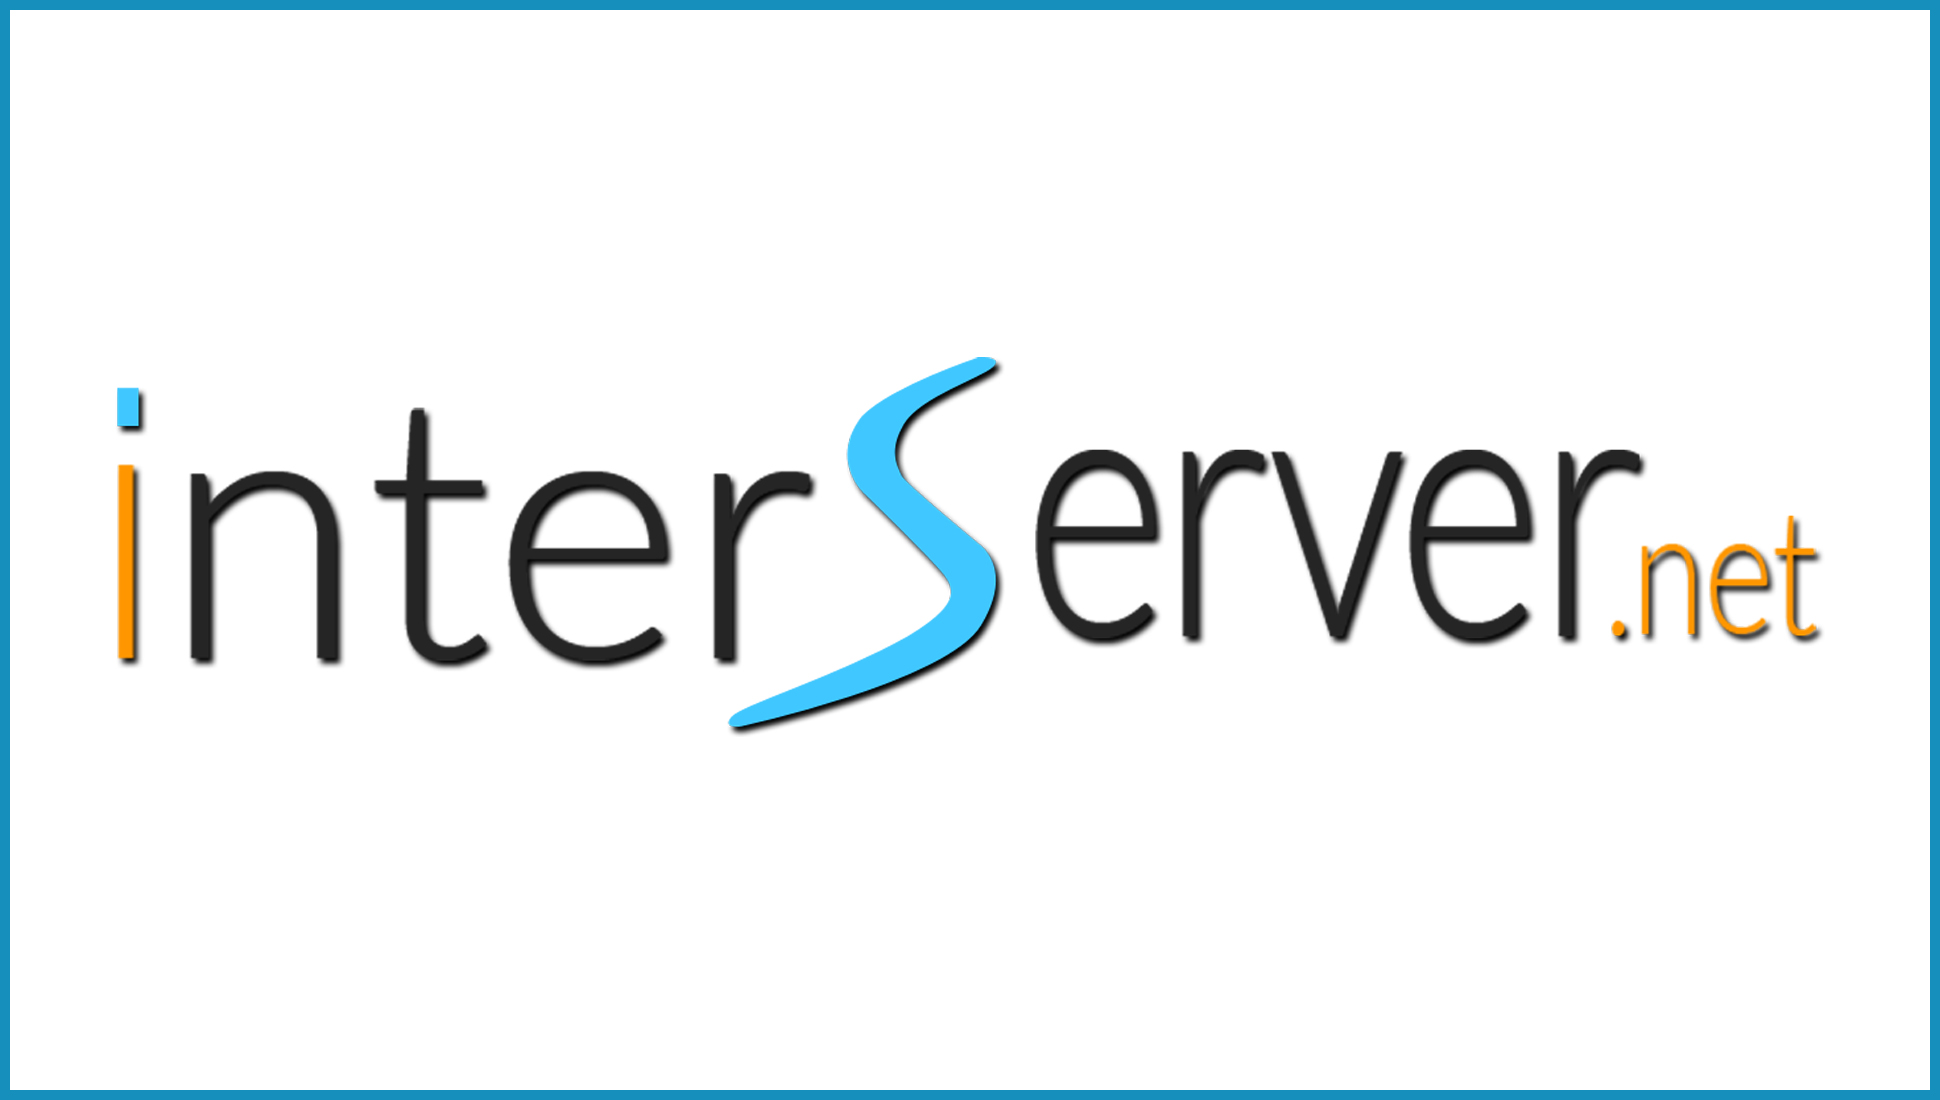 Логотип Interserver